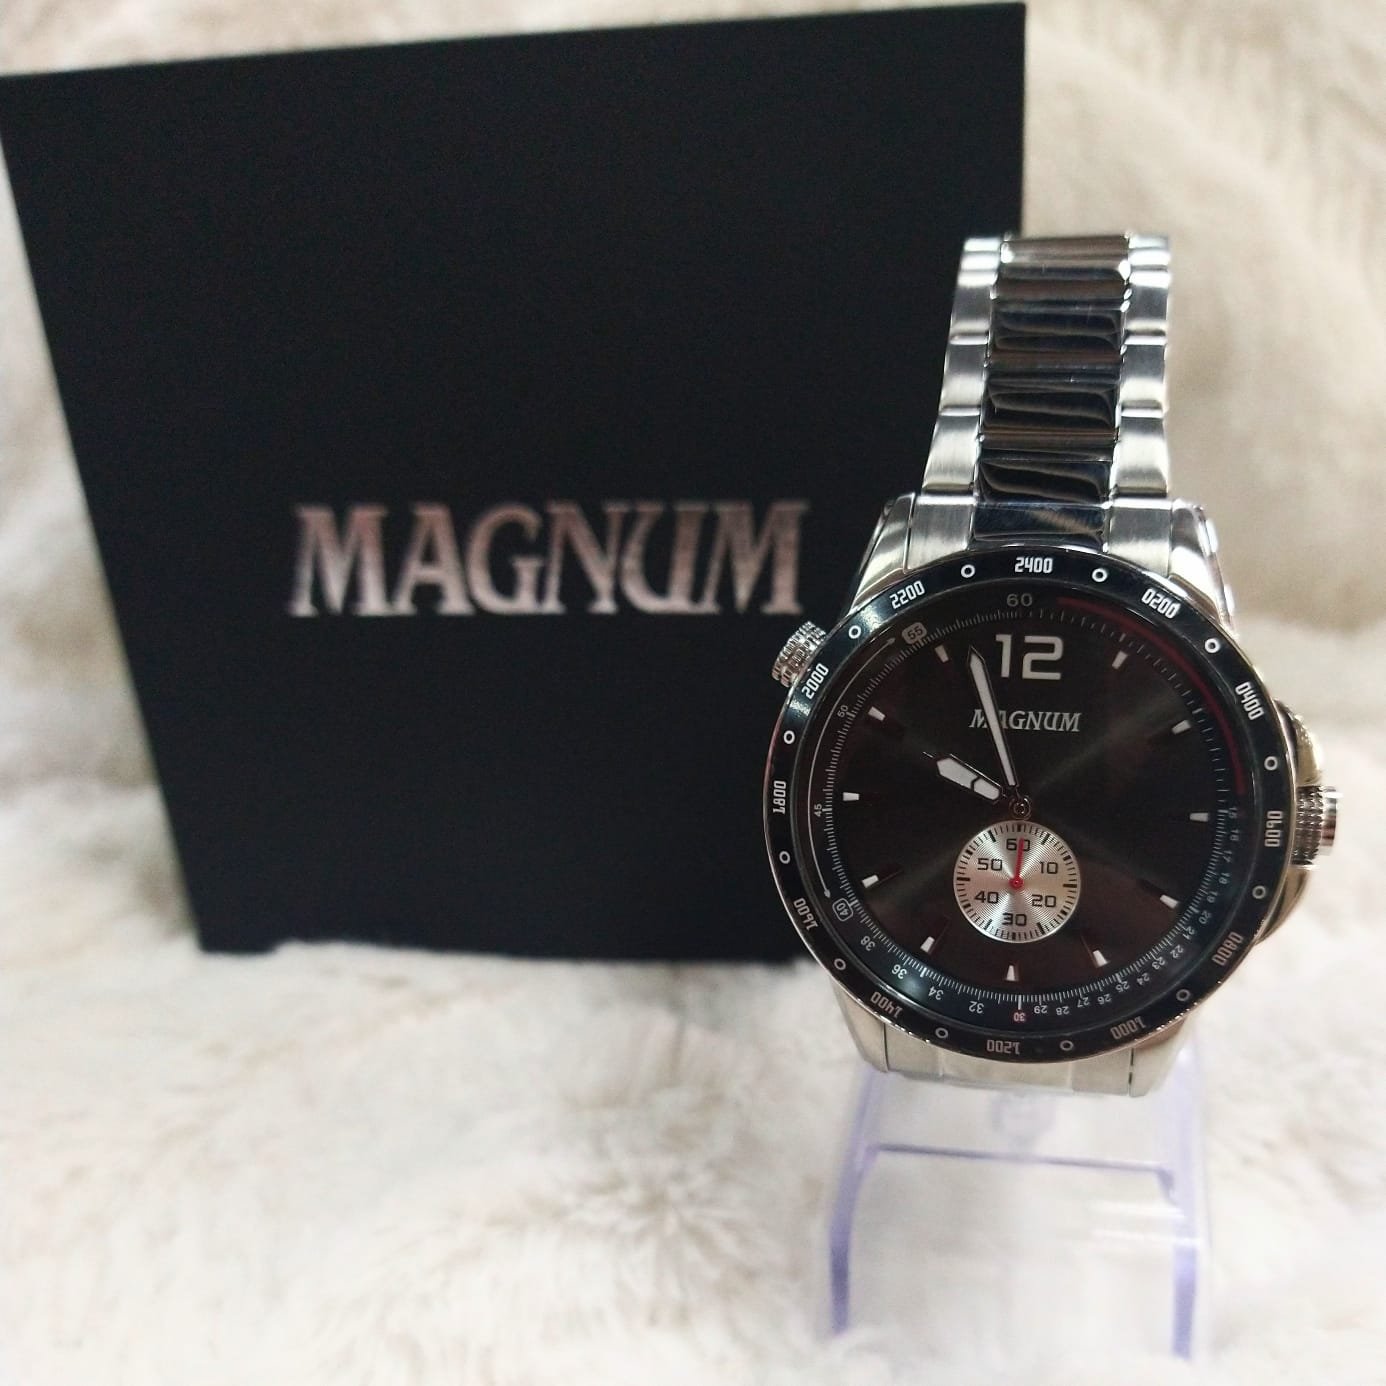 Relógio Magnum com pulseira em couro. Analógico, mas ta